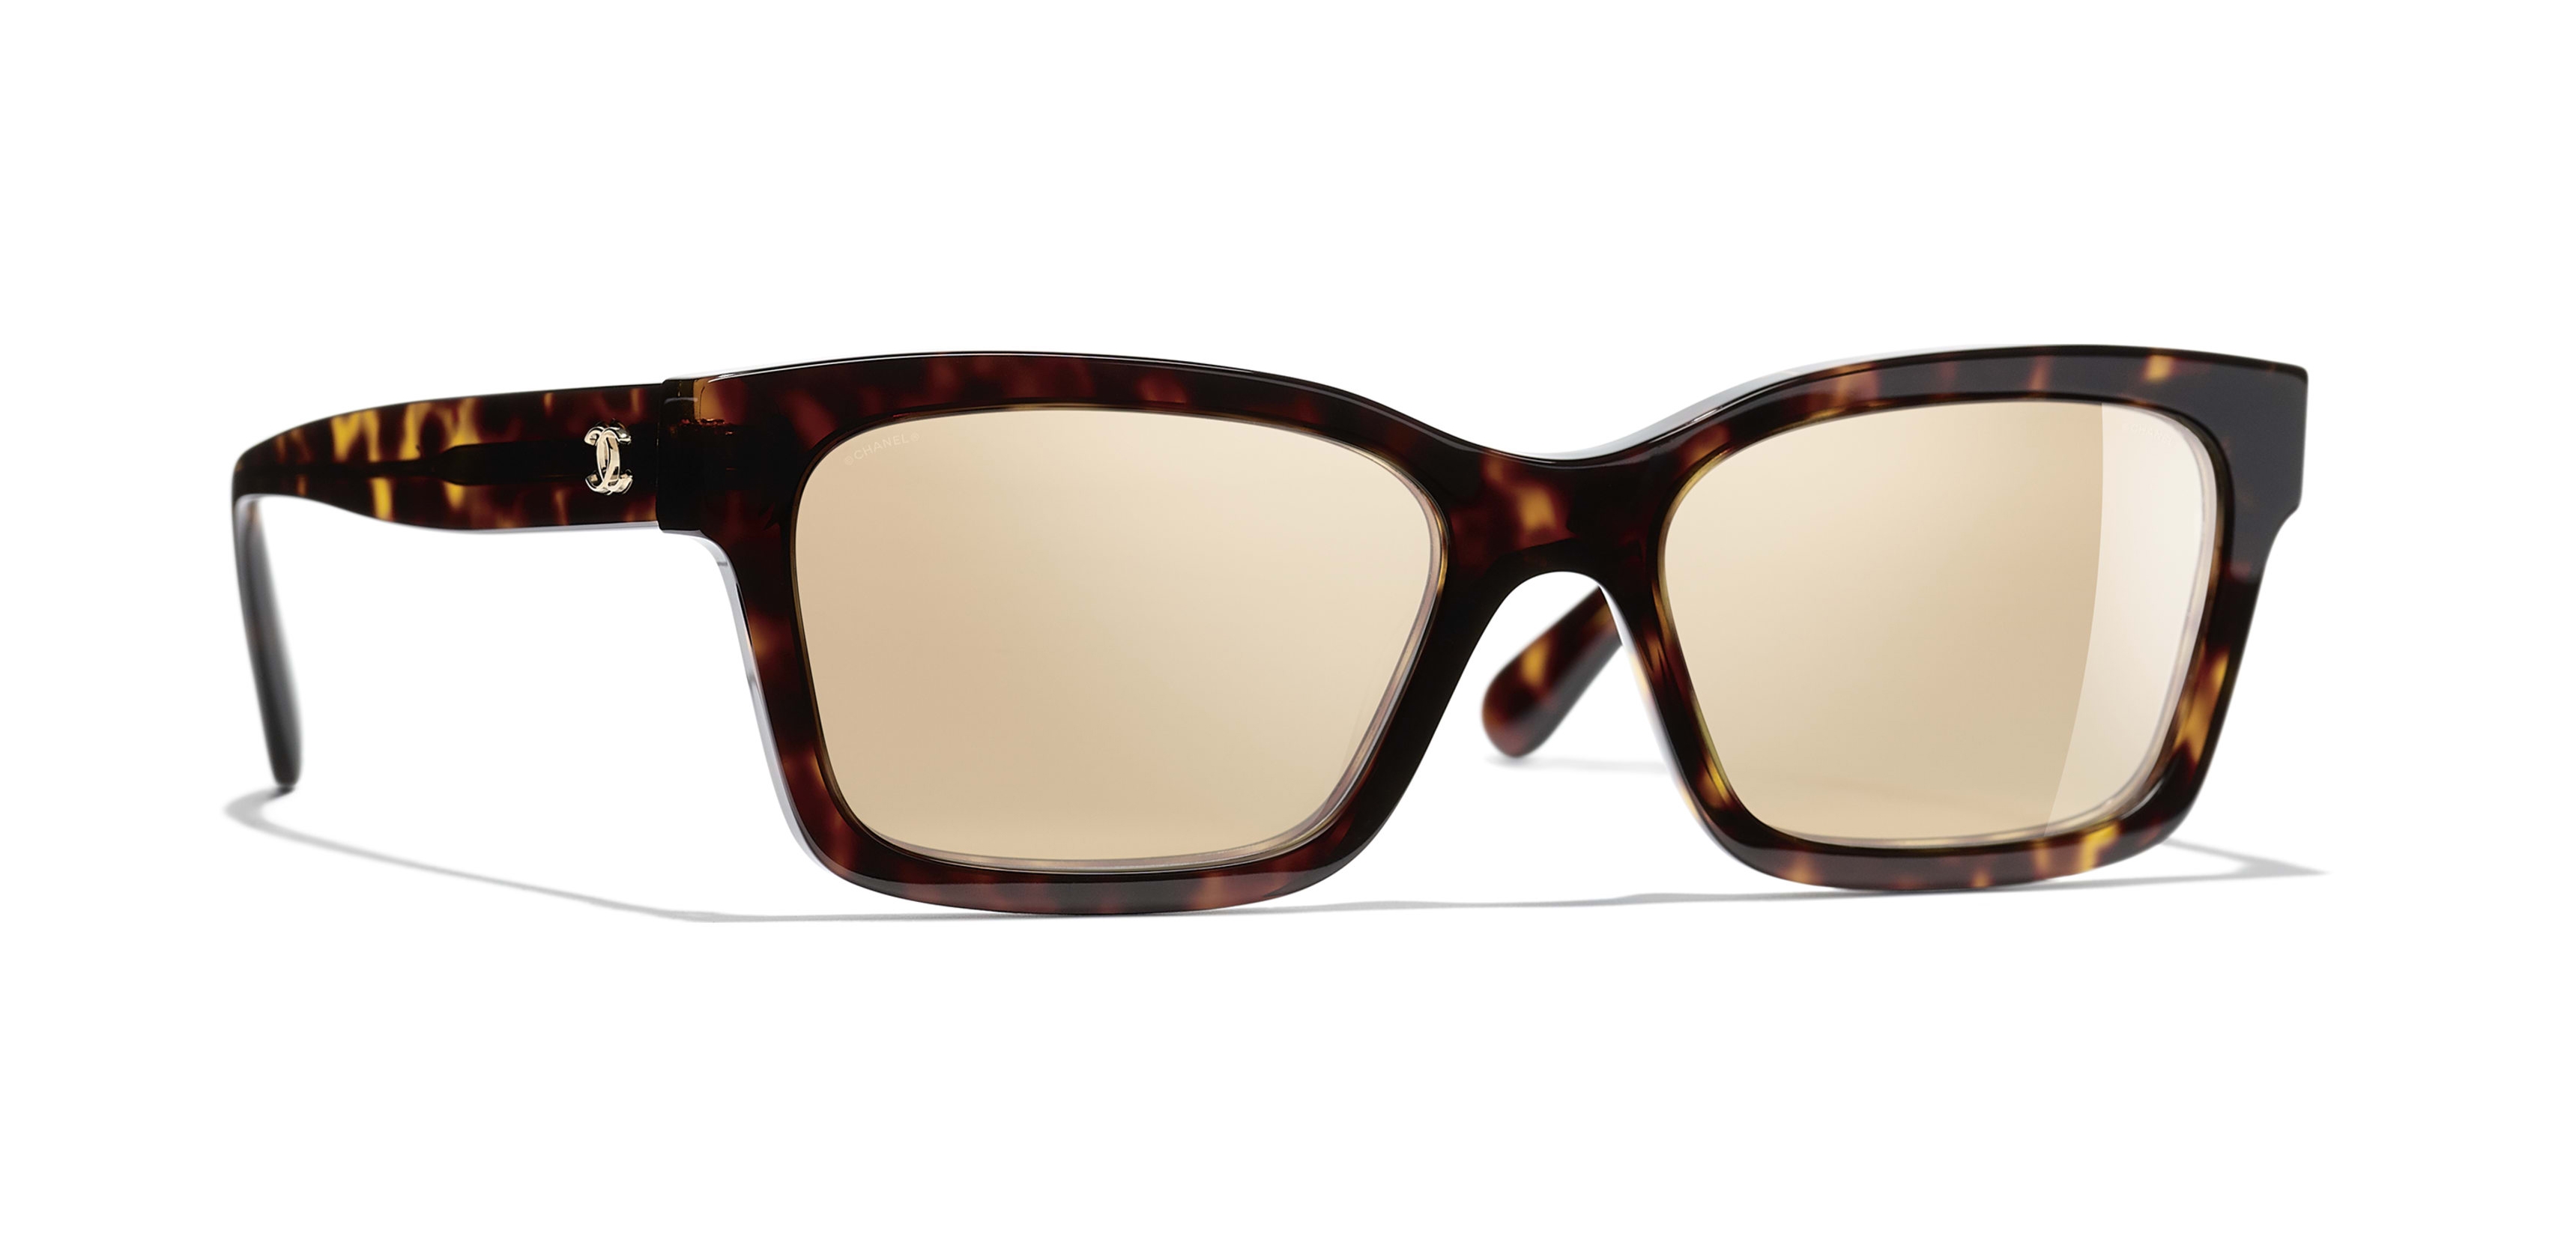 Chanel - Square Sunglasses - Dark Tortoise Gold Mirror - Chanel